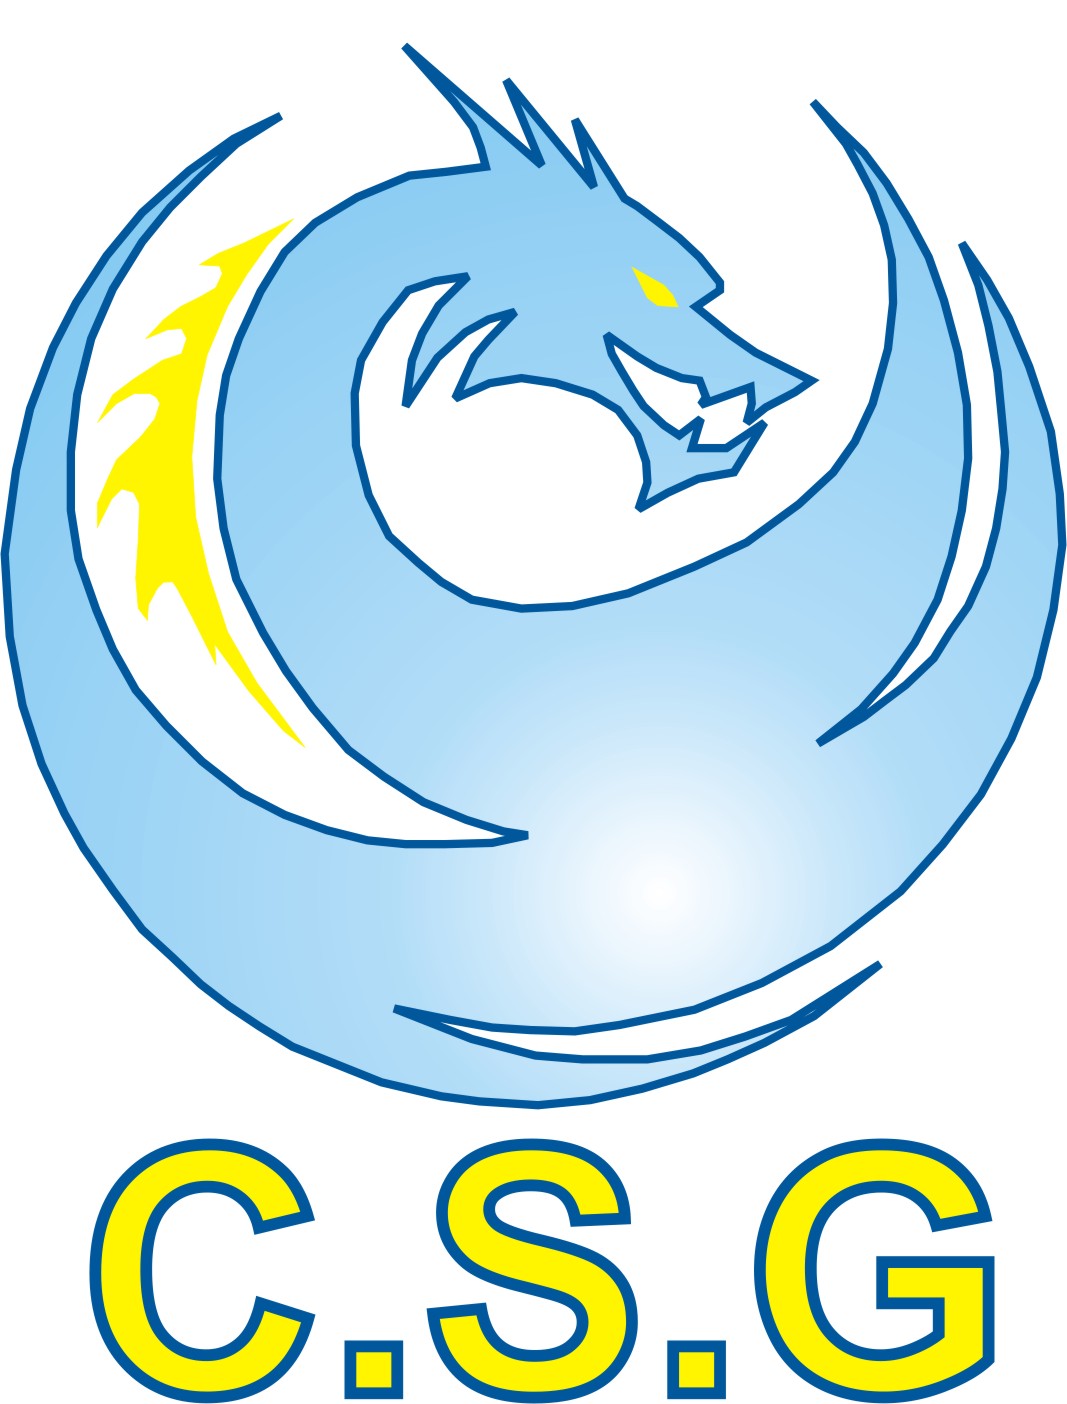 Logo csg 6